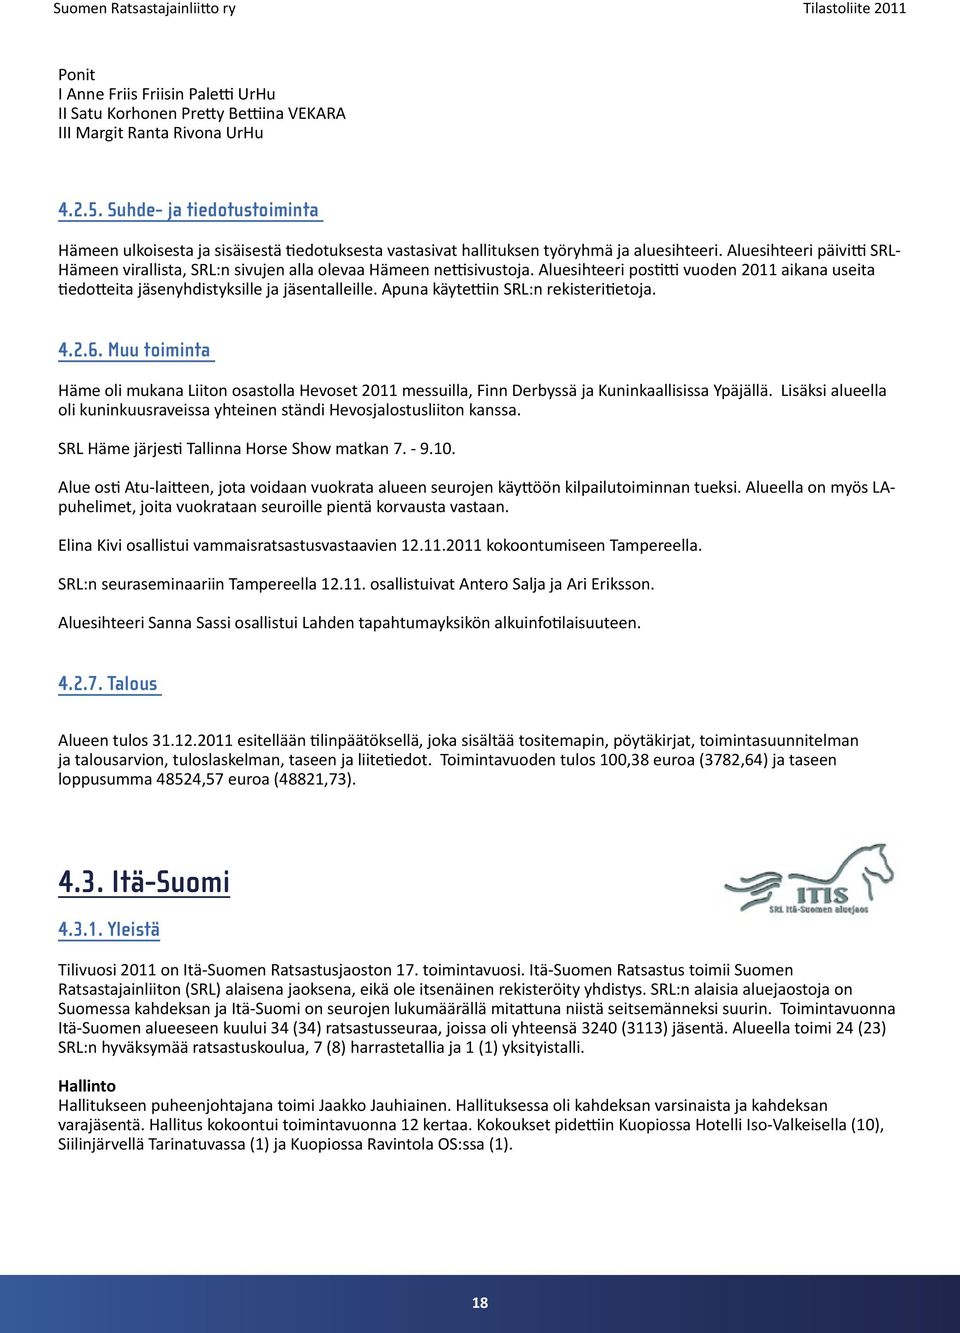 Aluesihteeri päivitti SRL- Hämeen virallista, SRL:n sivujen alla olevaa Hämeen nettisivustoja. Aluesihteeri postitti vuoden 2011 aikana useita tiedotteita jäsenyhdistyksille ja jäsentalleille.